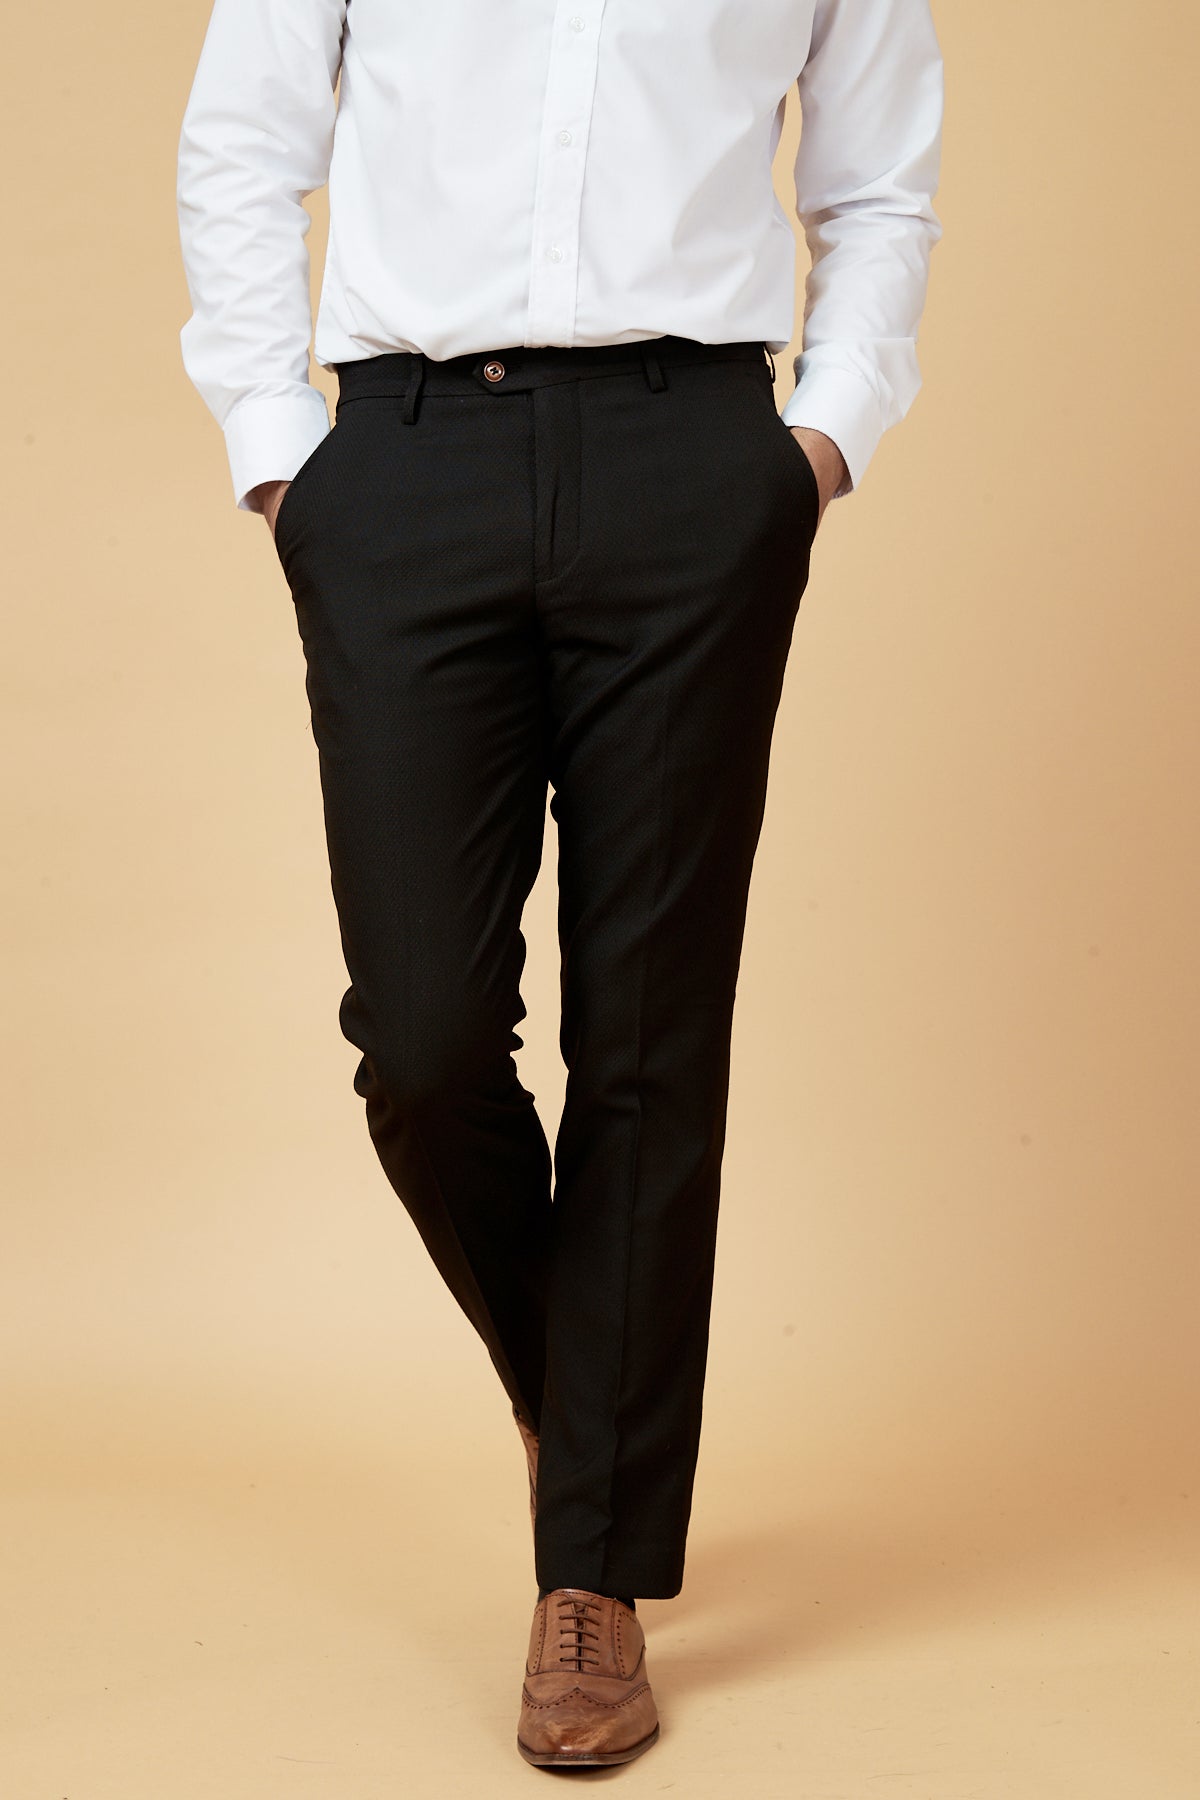 Black Tweed Trousers  Mens Tweed Trousers  Mens Tweed Suits Marc Darcy  Menswear